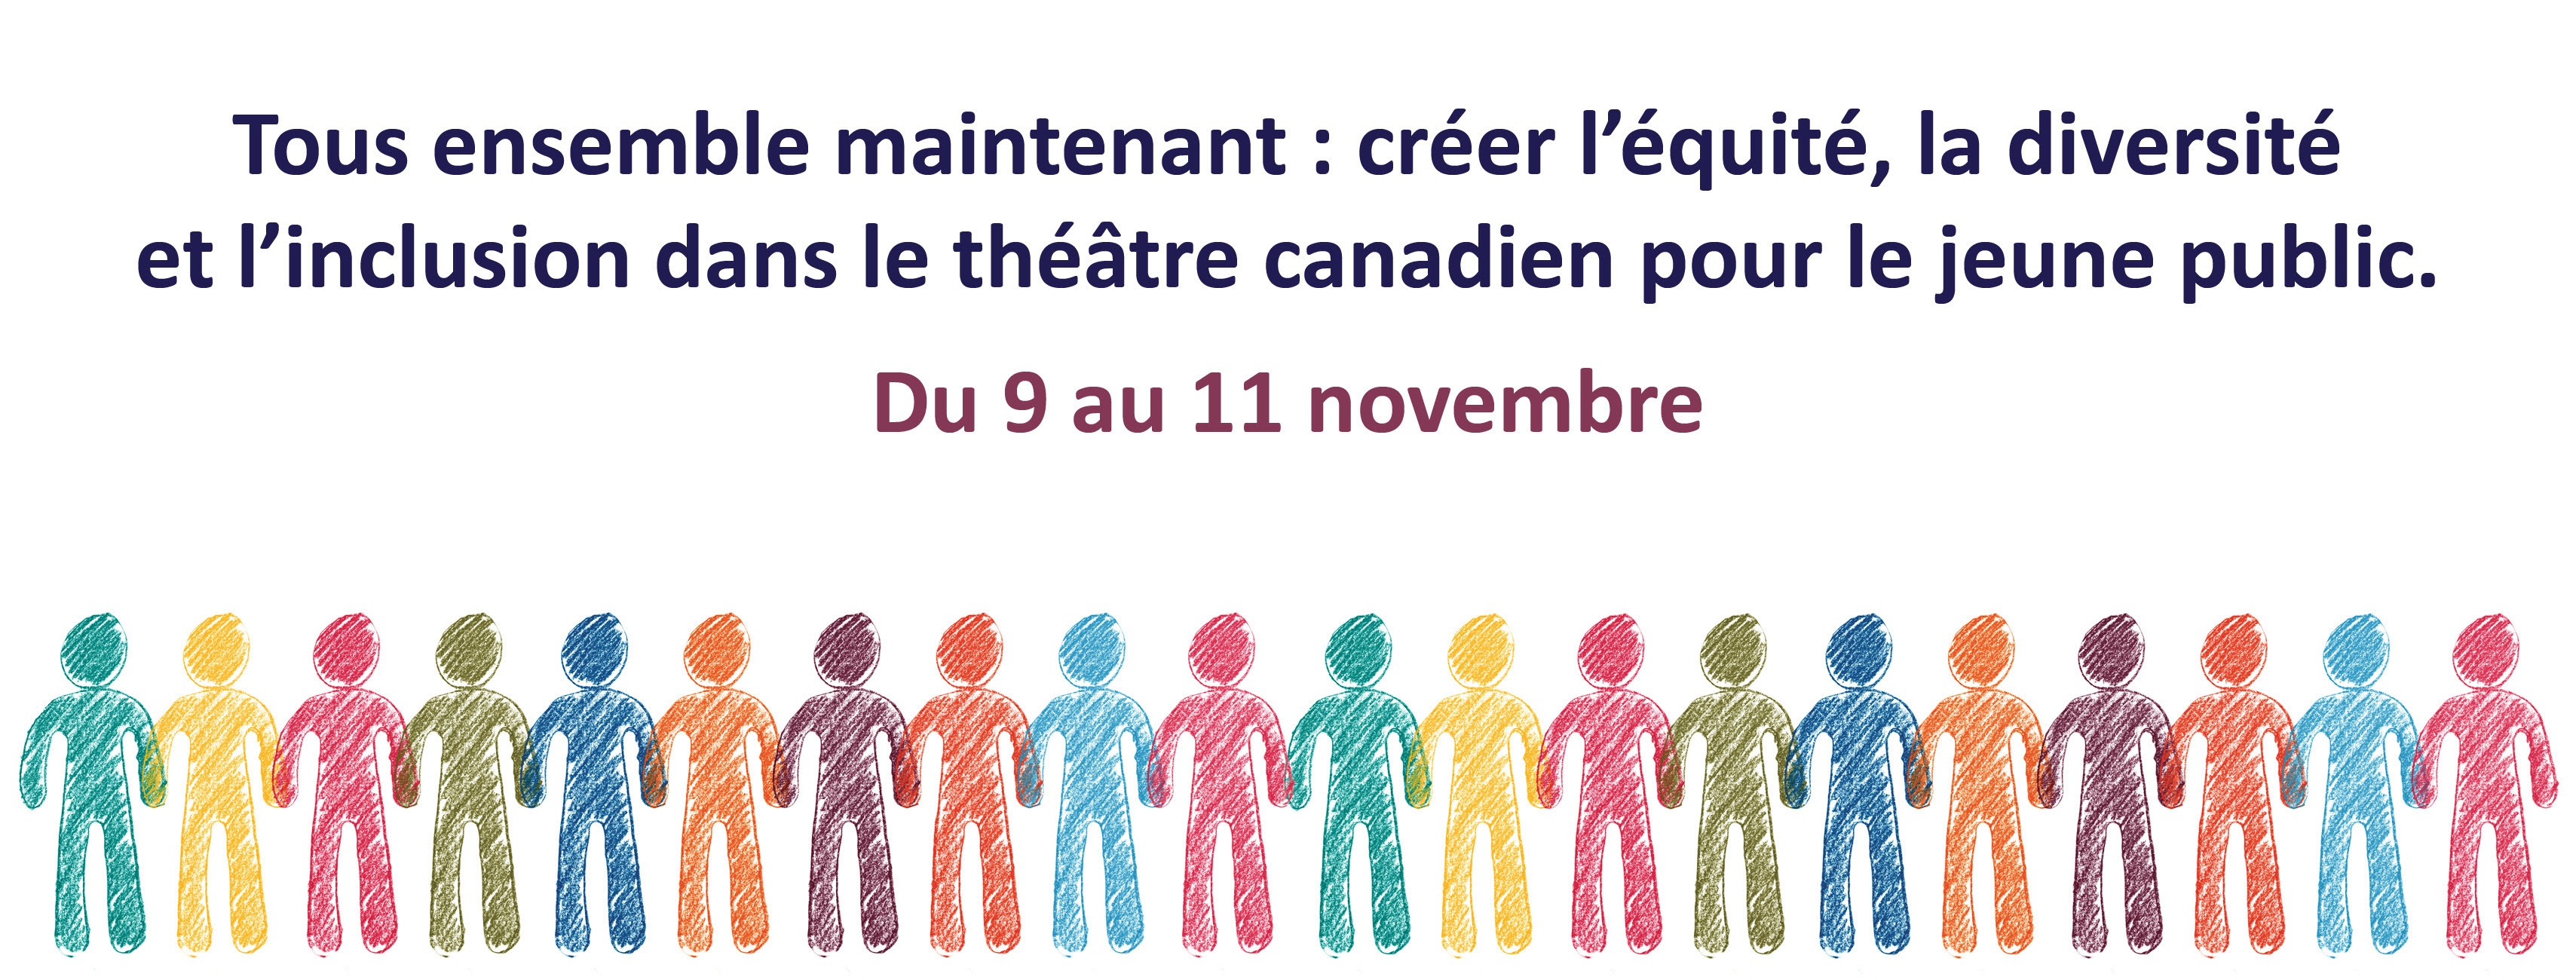 Tous ensemble maintenant : créer l’équité, la diversité et l’inclusion dans le théâtre canadien pour le jeune public. Du 9 au 11 novembre 